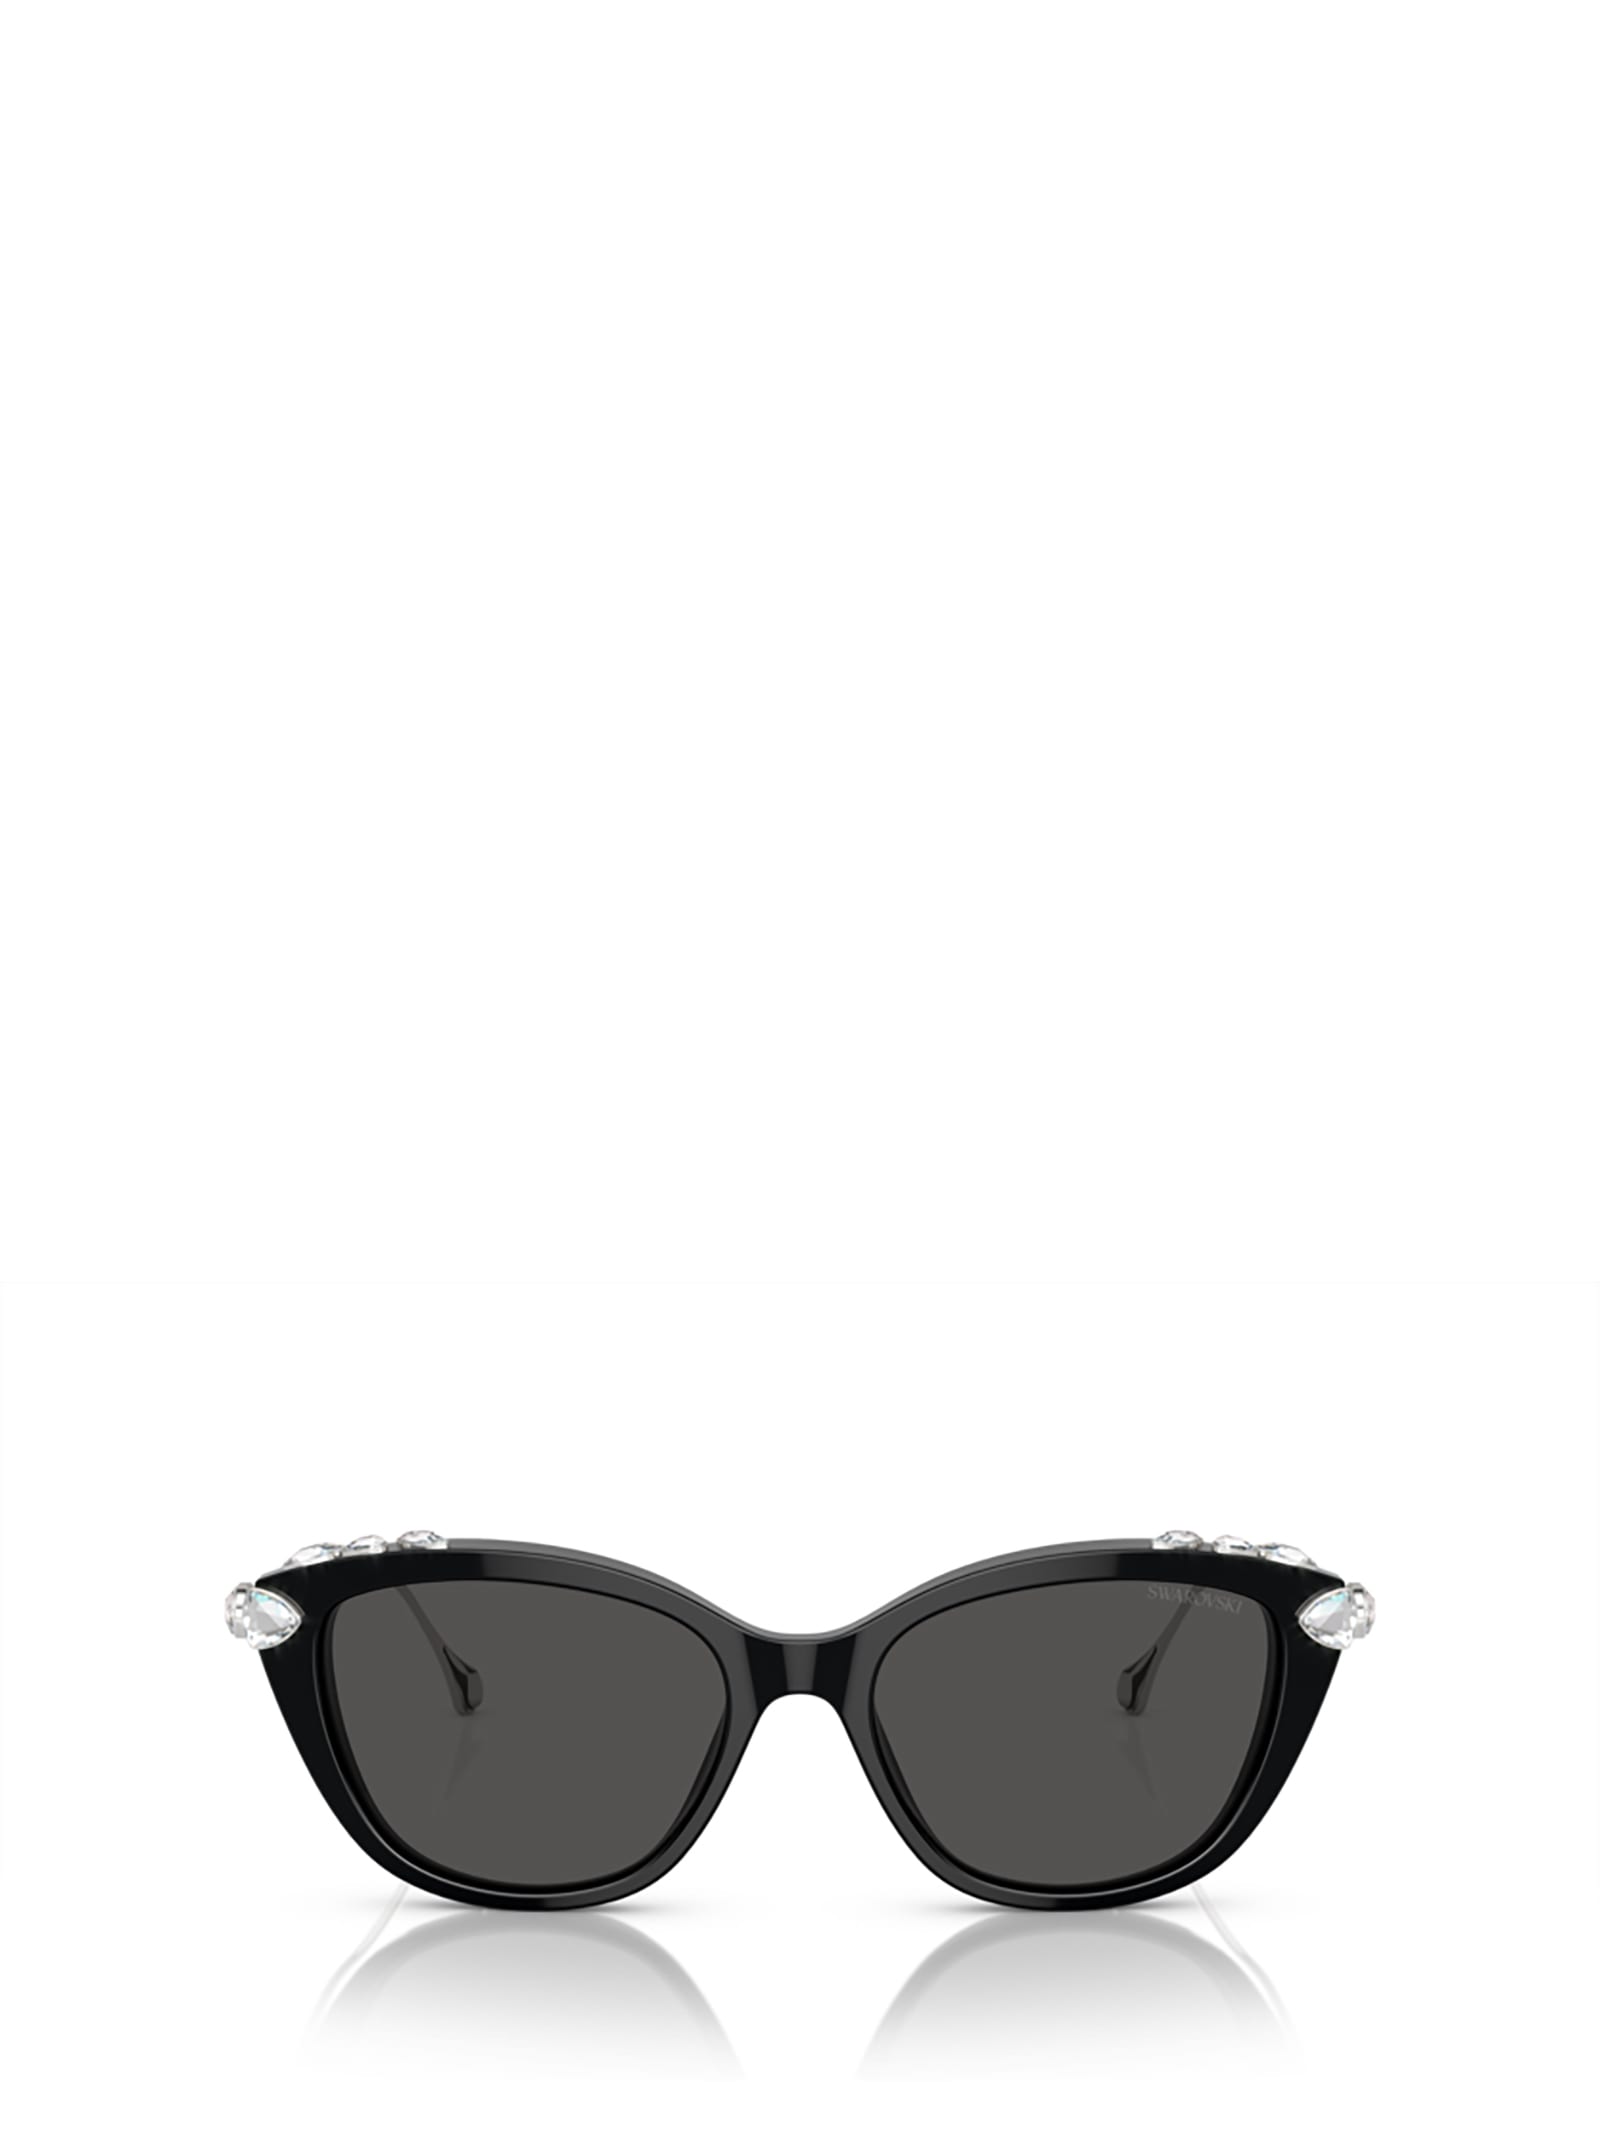 swarovski sk6010 black sunglasses